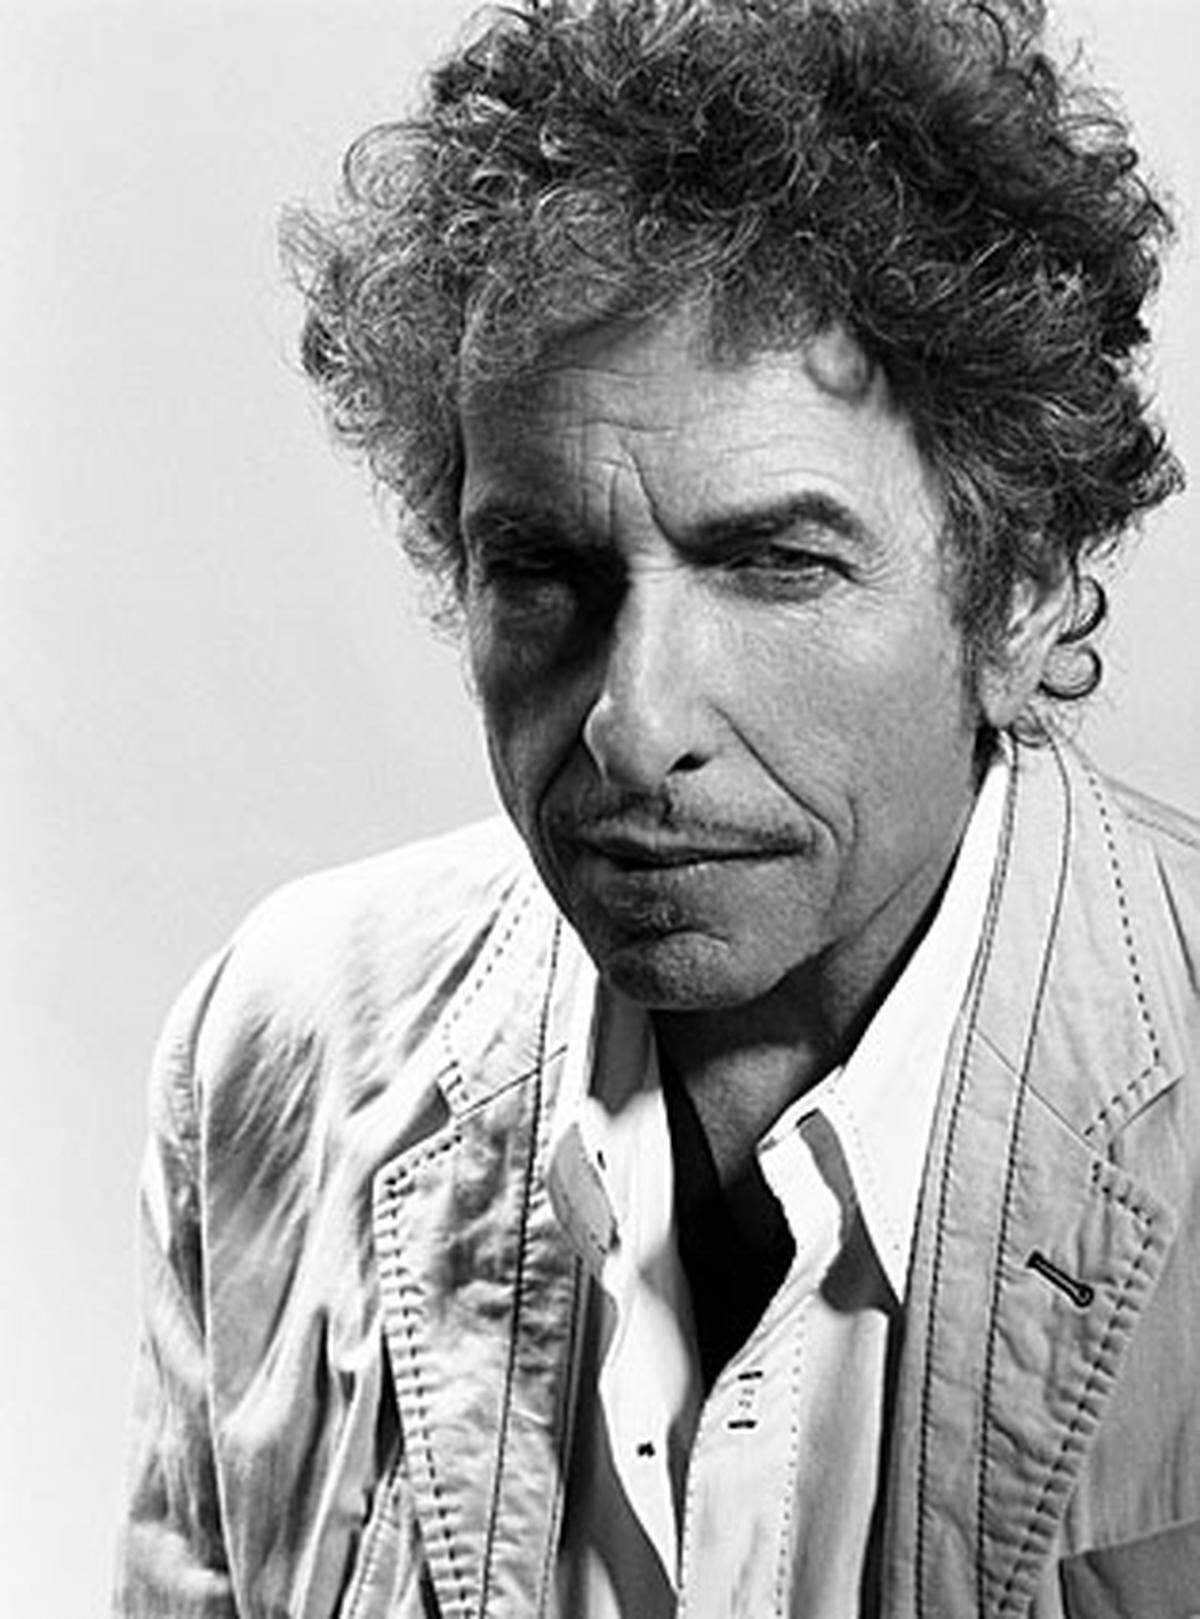 Mit Beginn der 80er Jahre schlitterte der amerikanische Folk- und Rocksänger Bob Dylan in eine musikalische Krise: Schlechte Rezensionen, Alkoholprobleme, Rückzug ins Privatleben. Erst Mitte der Neunziger trat er wieder breitenwirksam auf, das erfolgreiche Comeback gelang ihm schließlich mit dem Album "Time Out Of Mind". Dieses wurde gleich mit drei Grammys überhäuft, weiters folgten ein Golden Globe sowie ein Oscar für den besten Filmsong.